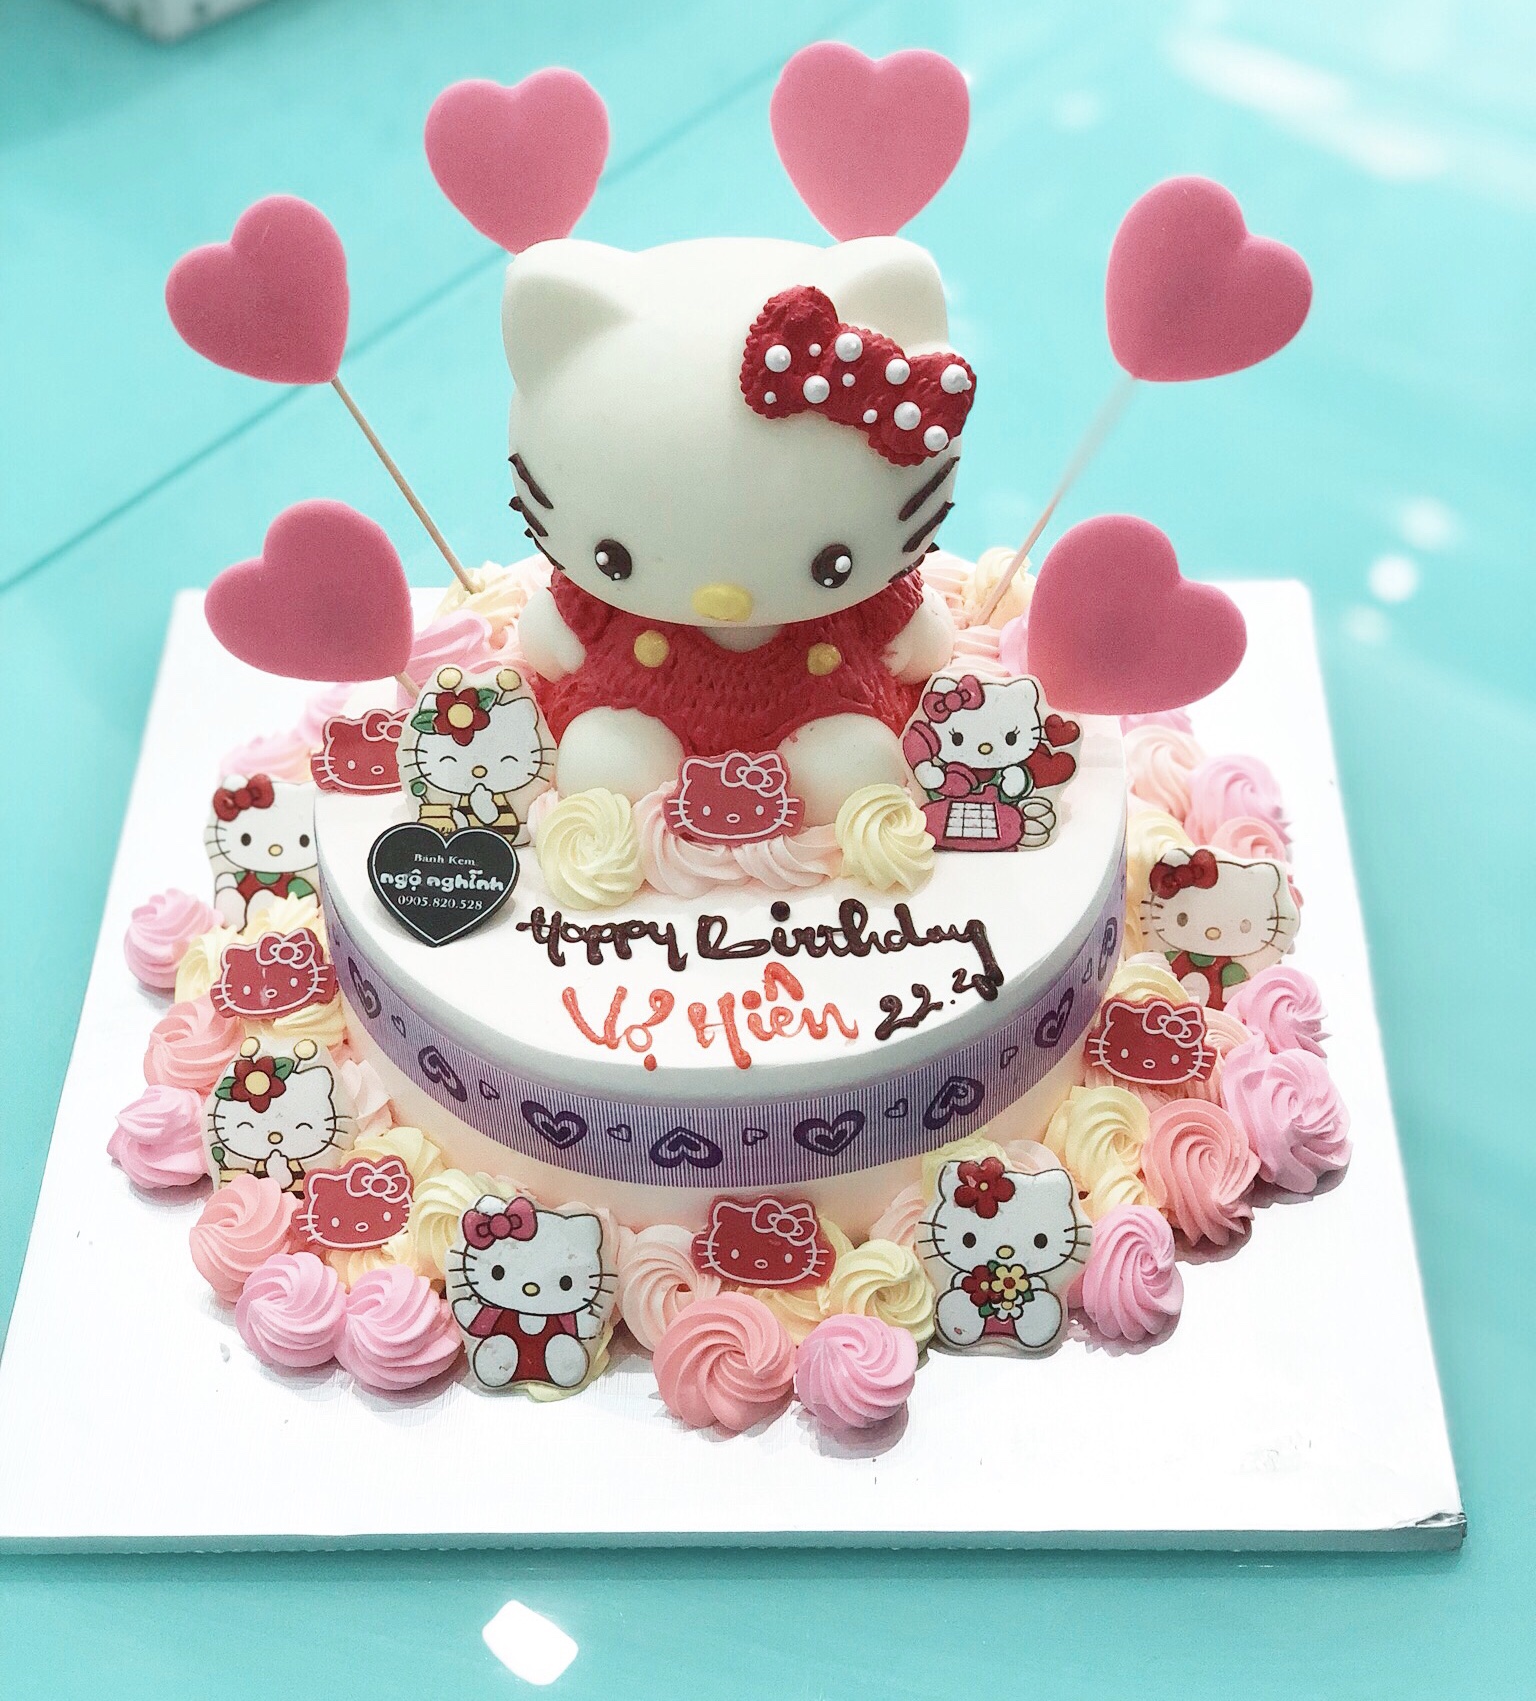 Một chiếc bánh sinh nhật không chỉ là bữa tiệc đánh dấu sự kiện quan trọng của bạn mà còn là một tác phẩm nghệ thuật. Với hình dáng độc đáo và màu sắc rực rỡ của chú mèo Hello Kitty, chiếc bánh này sẽ khiến bạn và khách mời của mình cảm thấy thích thú.